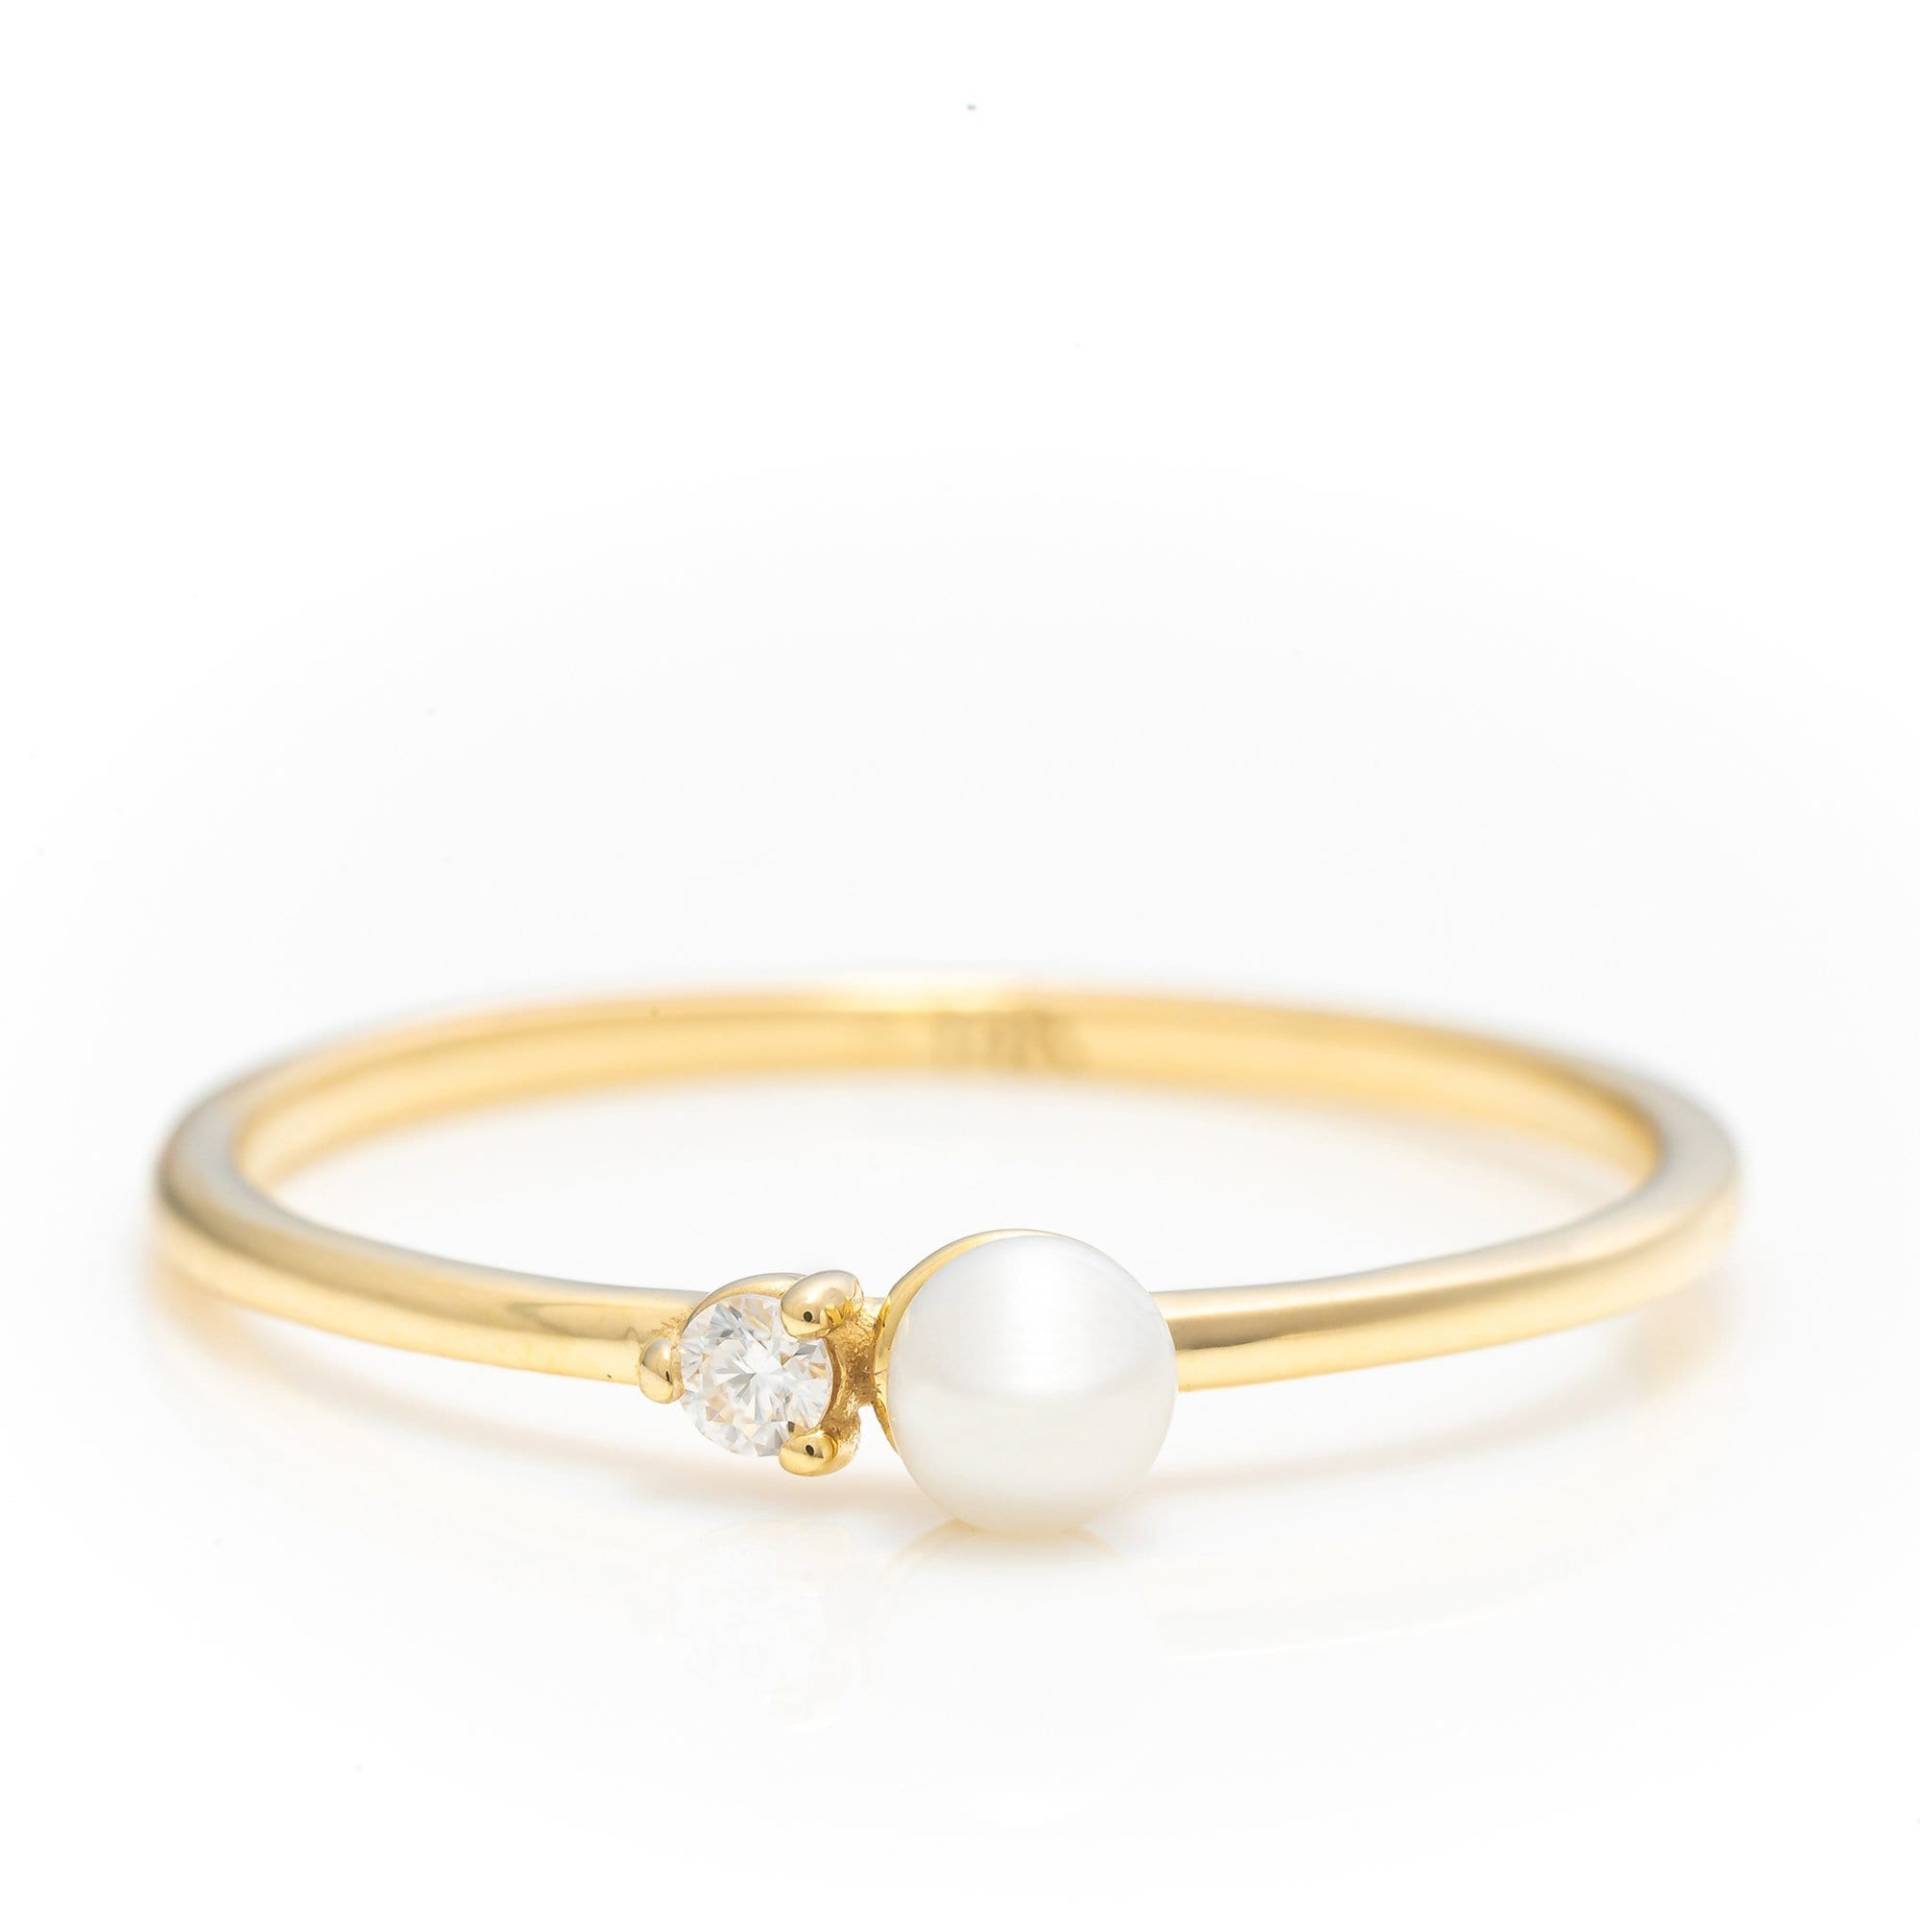 14K Solid Gold Zierliche Perlenring, Echtgold Natürliche Perle Ring Für Sie, Minimalist Design Premium Ring, Handgemachter Feiner Schmuck Von von SelanicaFineJewelry